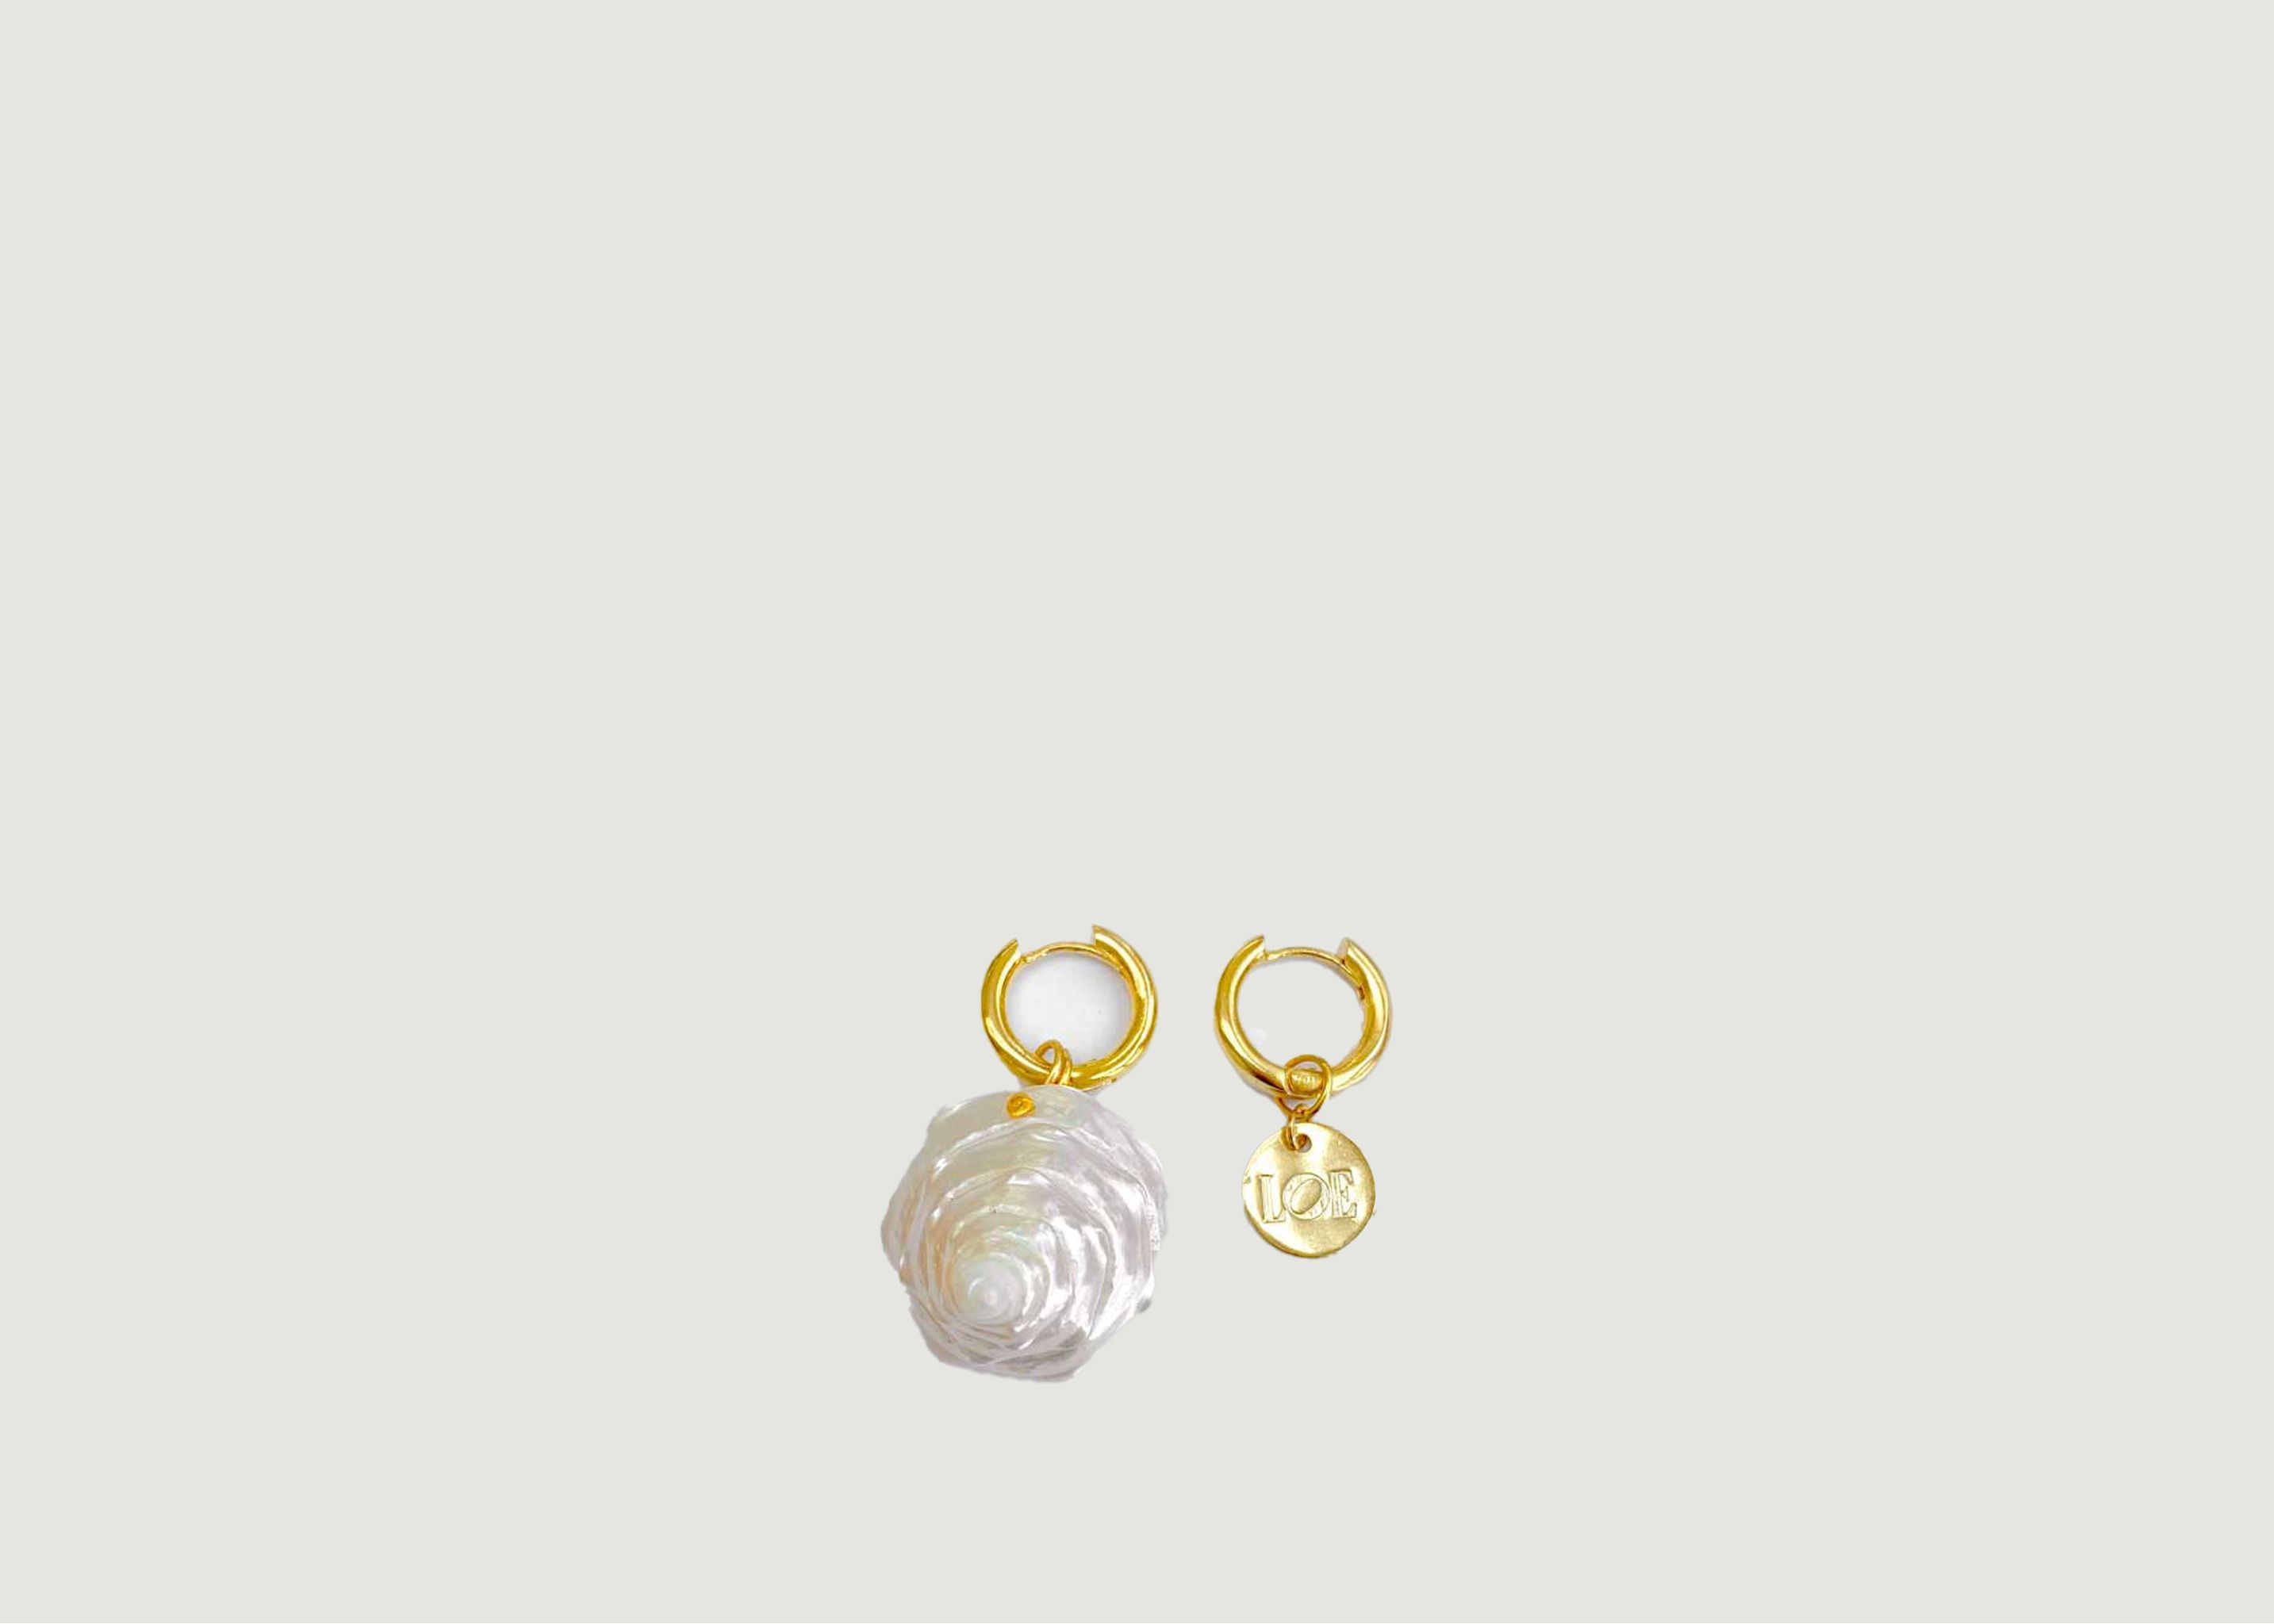 Mermaid earrings - LOE